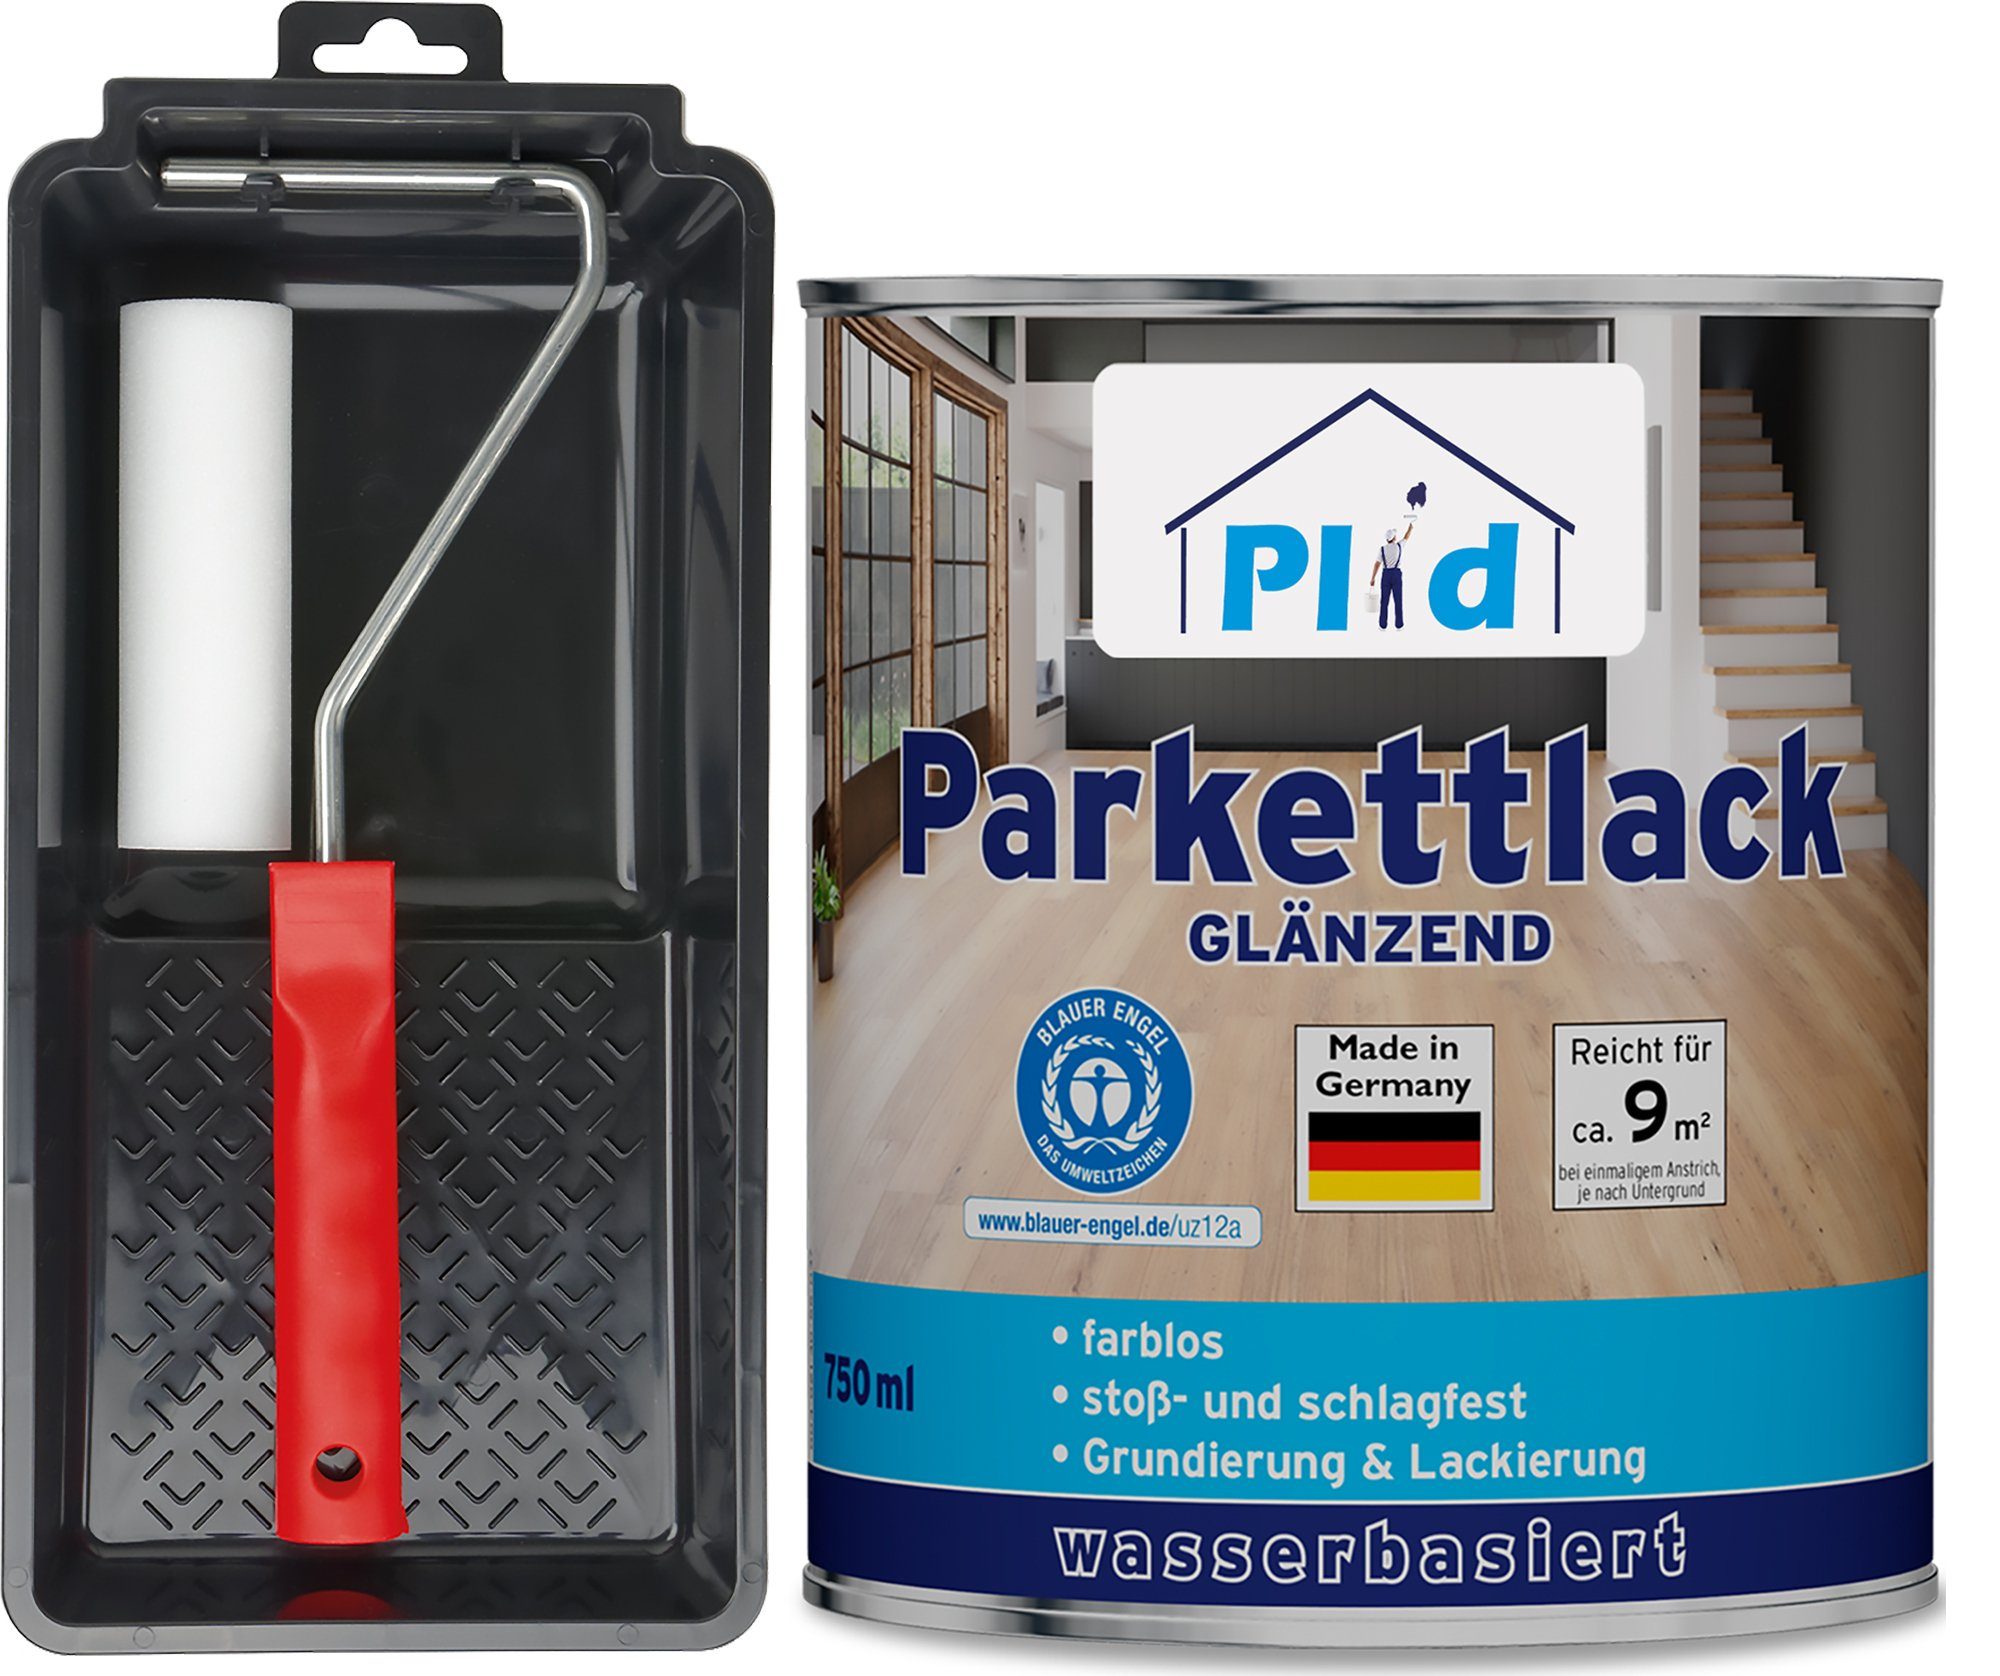 - Parkettlack Premium Farblos Farblos plid Glänzend Klarlack Set, und Parkettsiegel Treppen- Schnelltrocknend Parkettlack